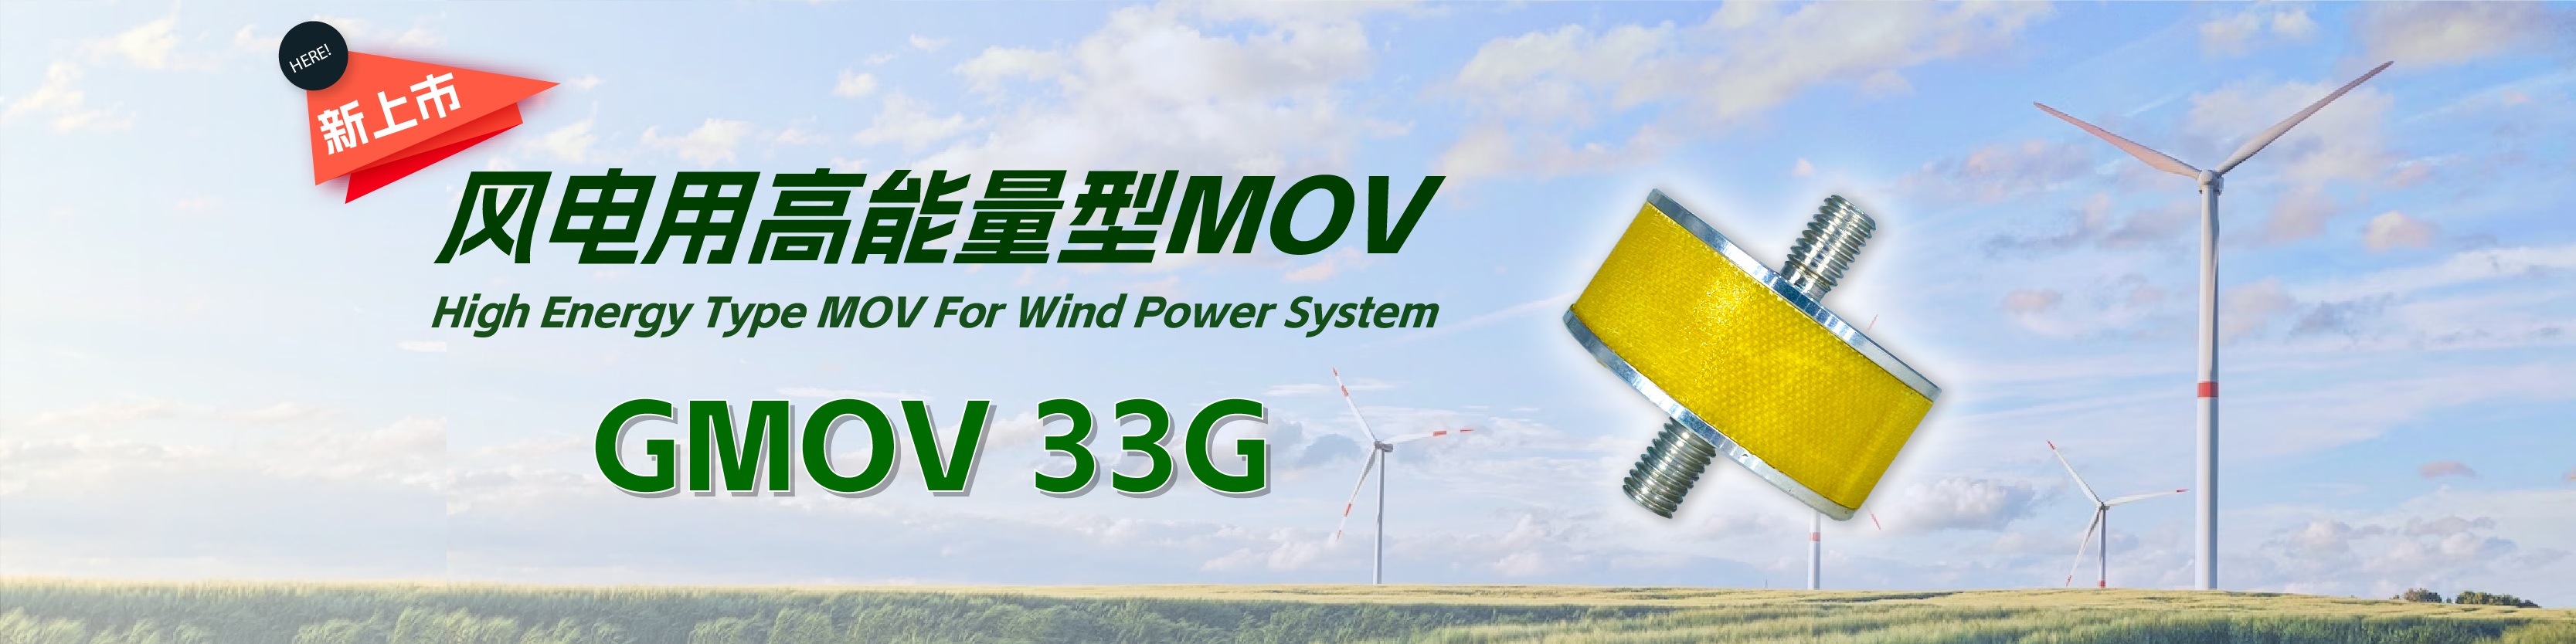 风电用GMOV 33G